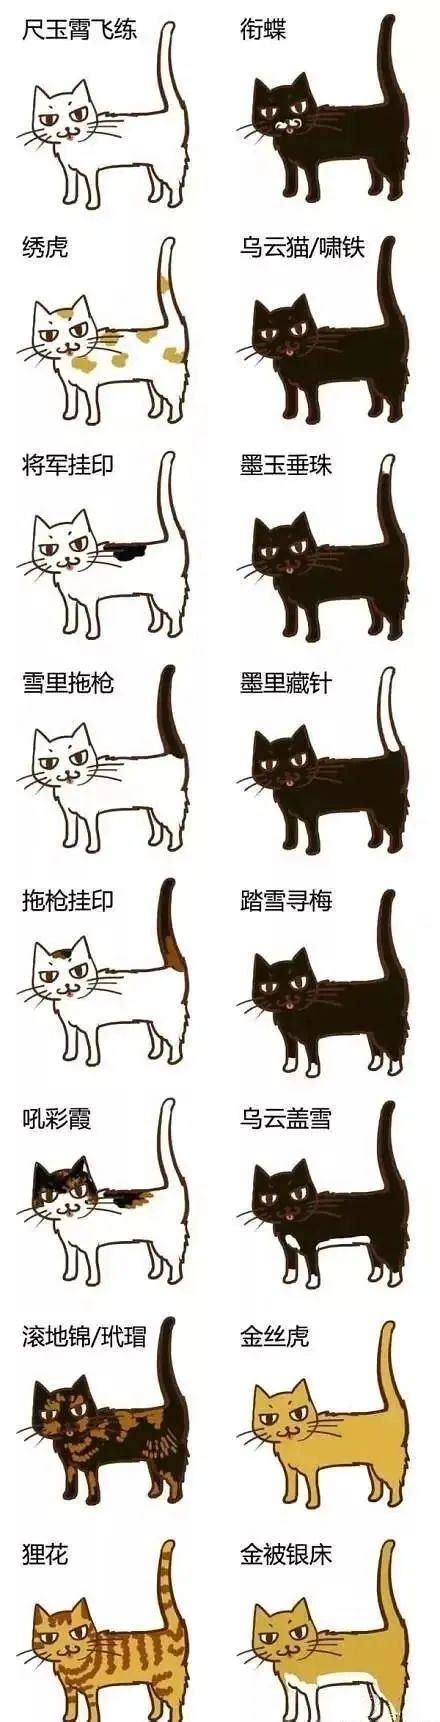 中国古代给猫起的名字